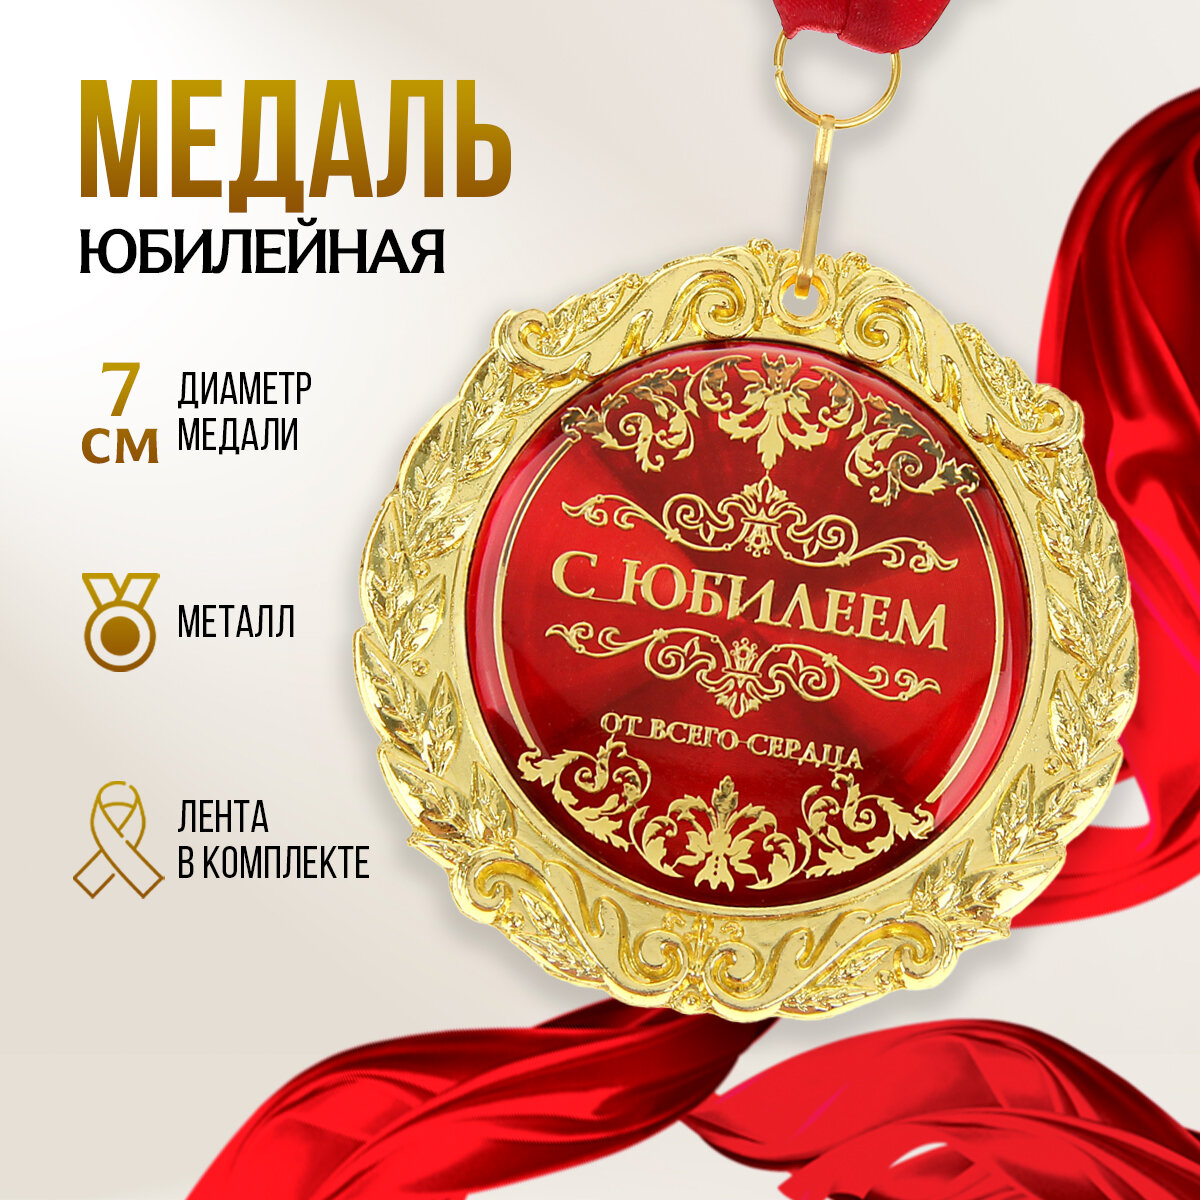 Медаль подарочная сувенирная на открытке "С юбилеем", диам. 7 см, металл